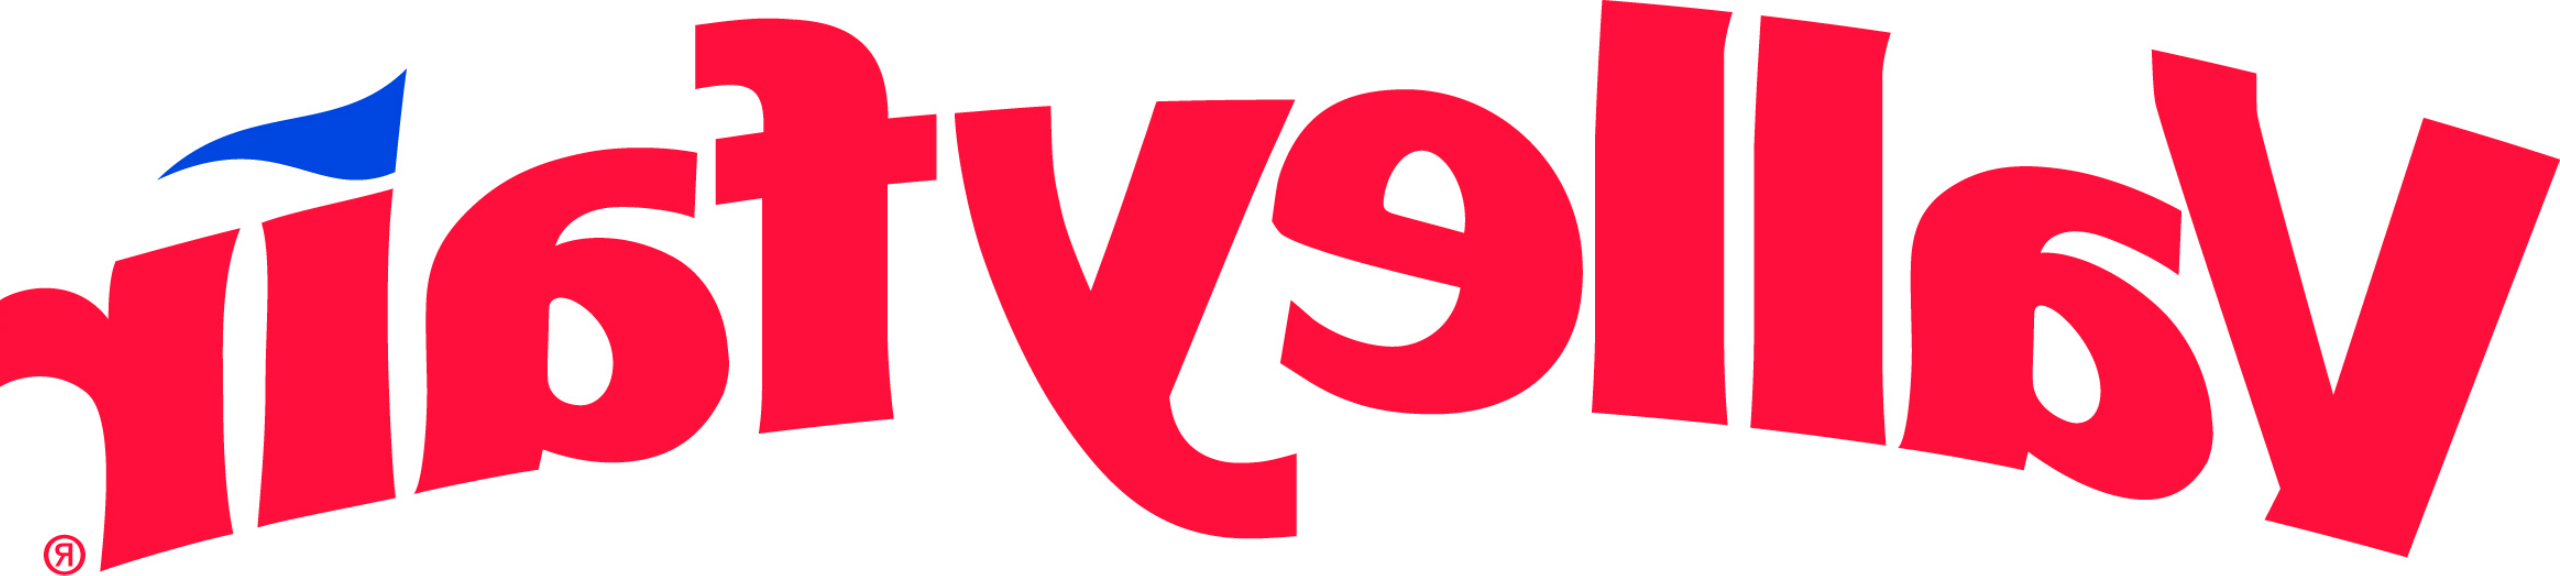 Valleyfair-logo.svg